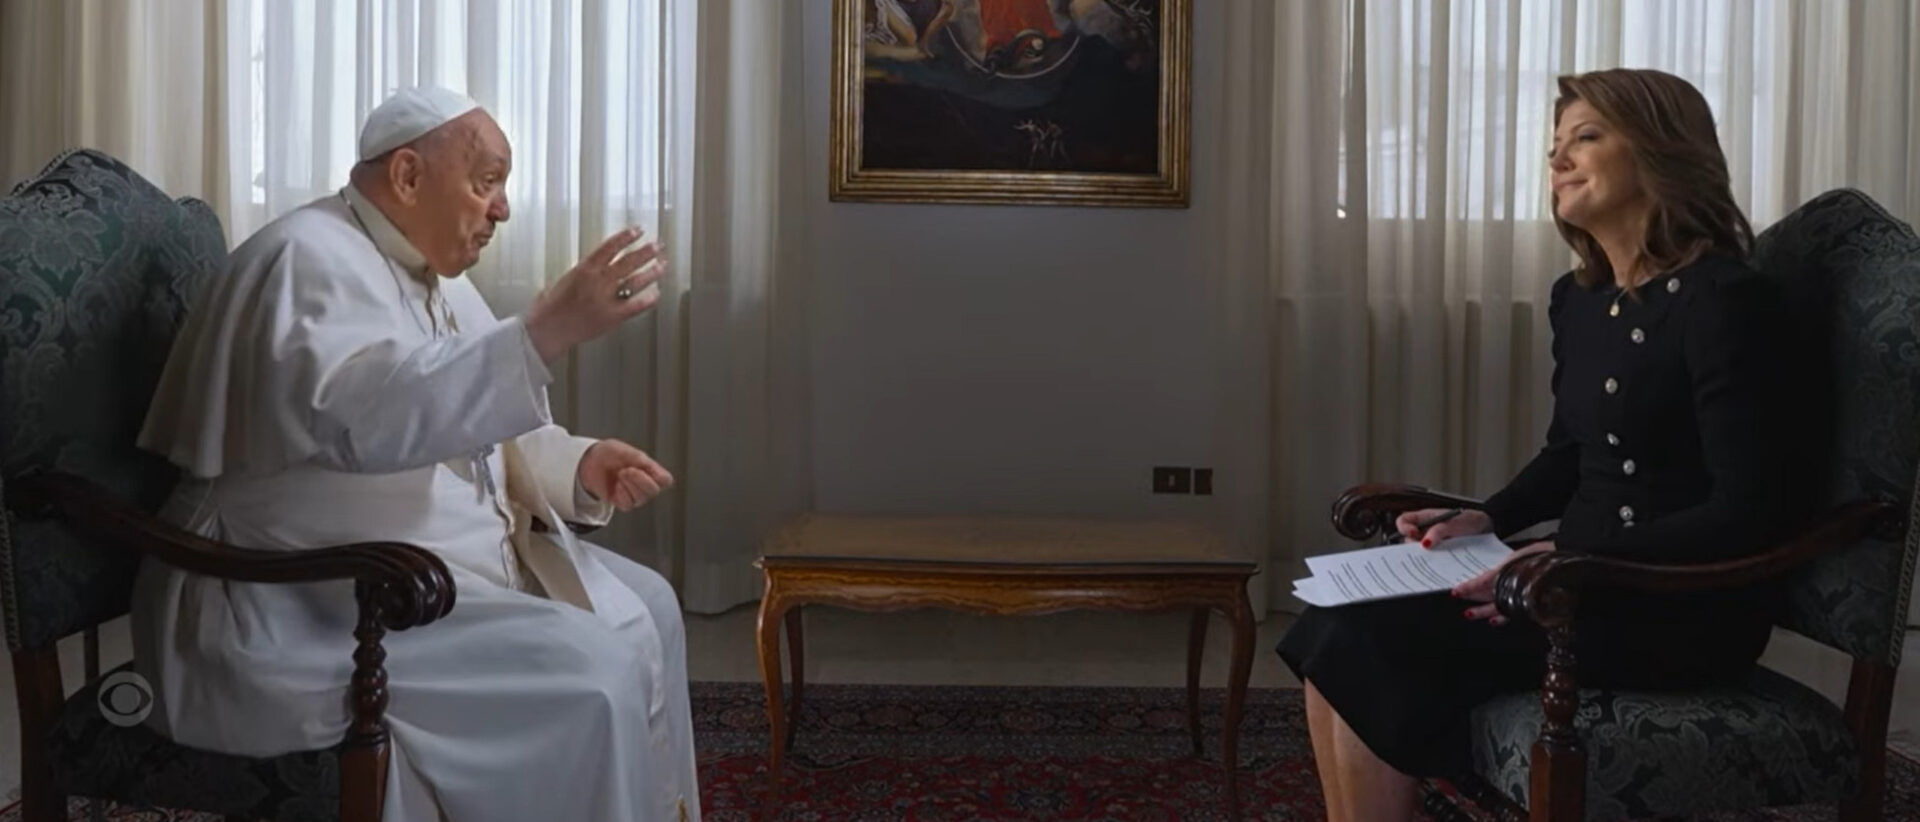 Papst Franziskus im Gespräch mit Norah O’Donnell